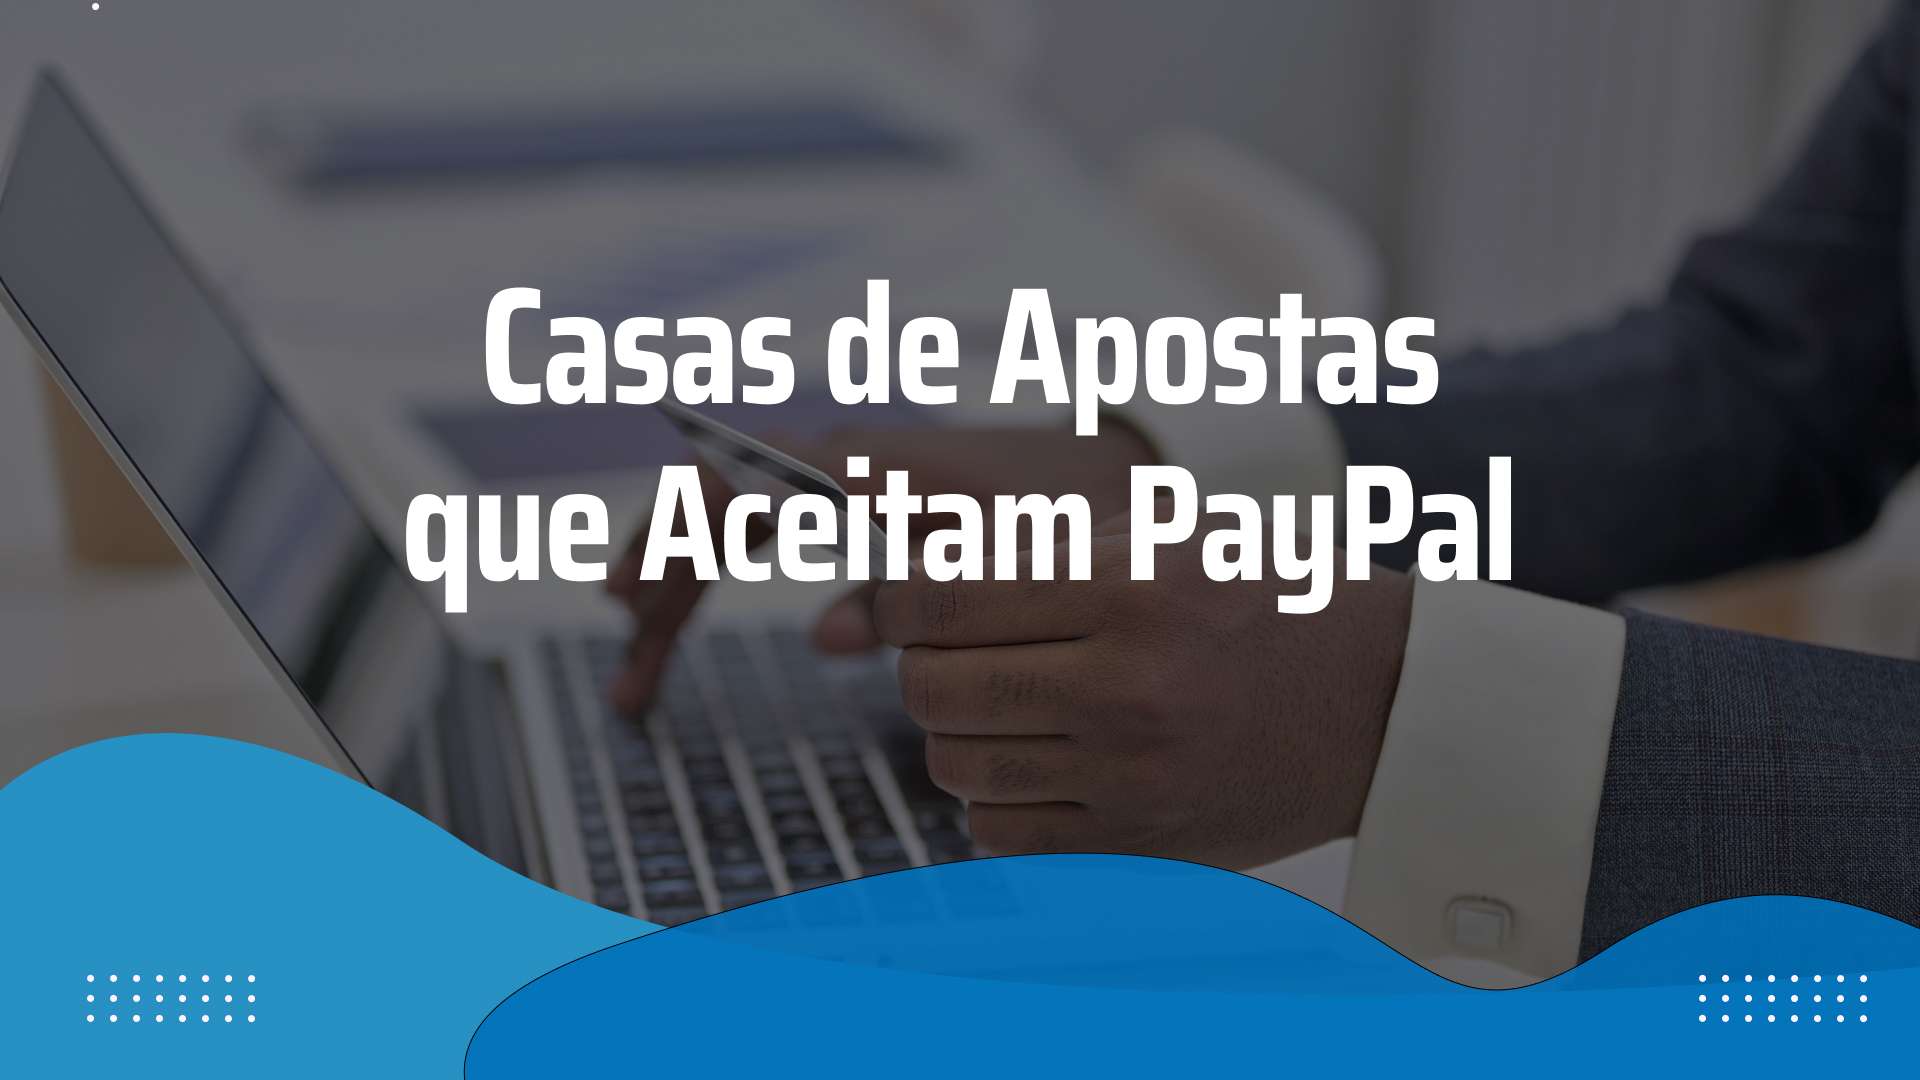 casas de apostas que aceitam Paypal - Casas de Apostas que Aceitam PayPal em Portugal 